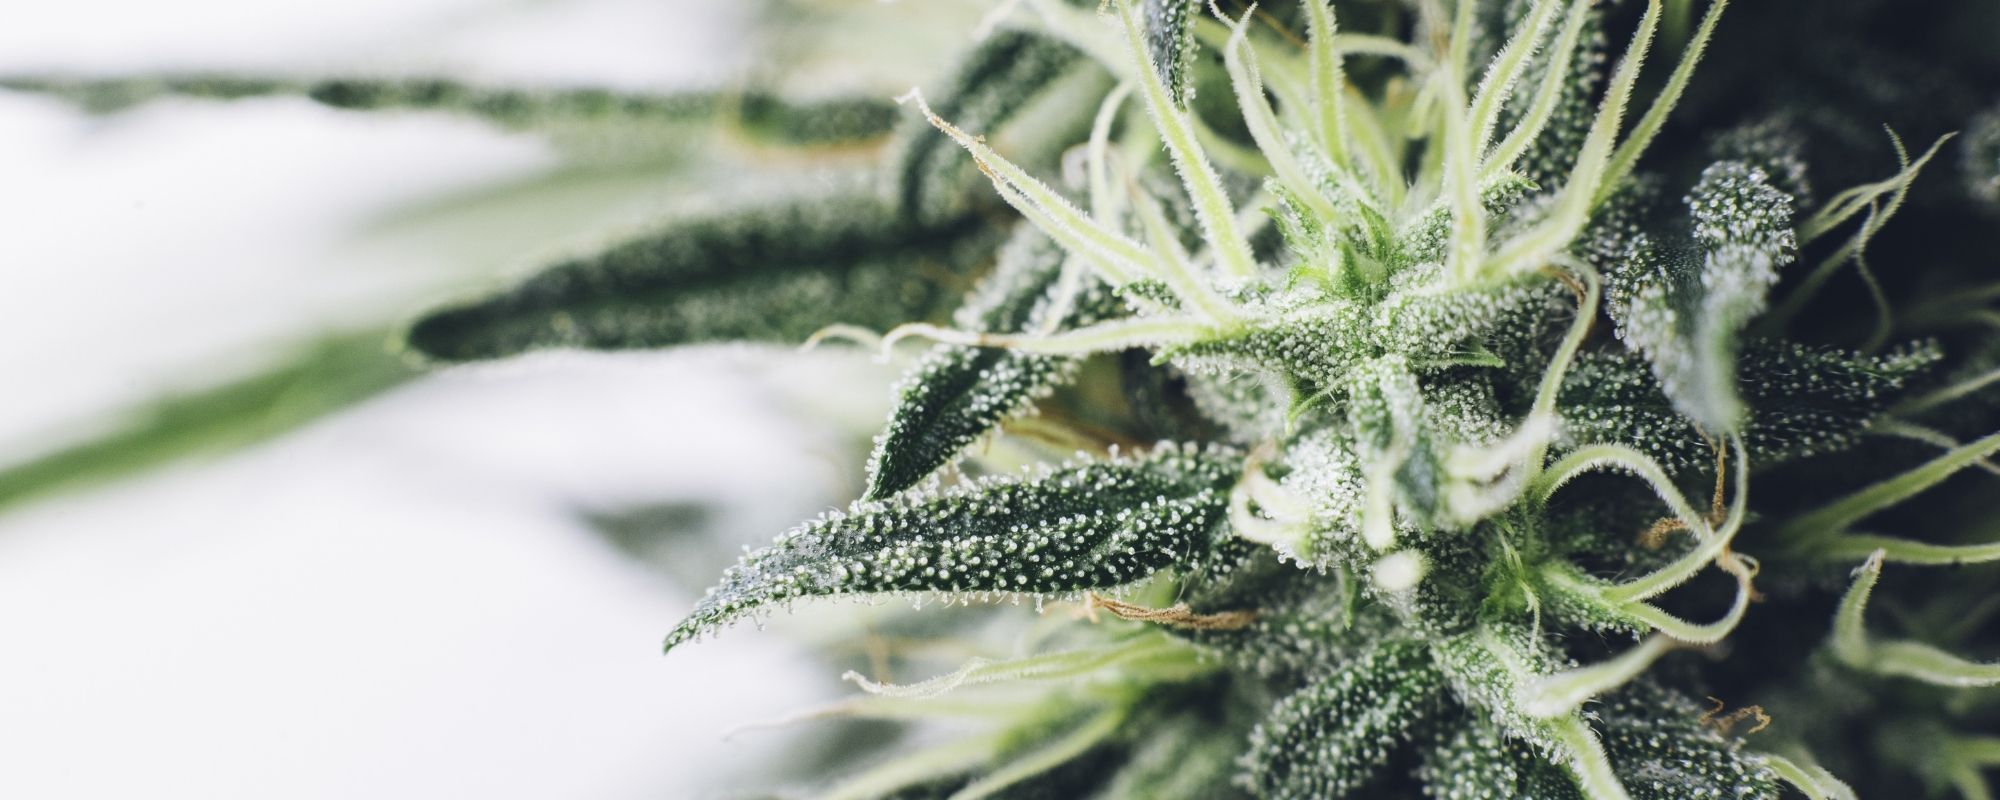 grow your own cannabis